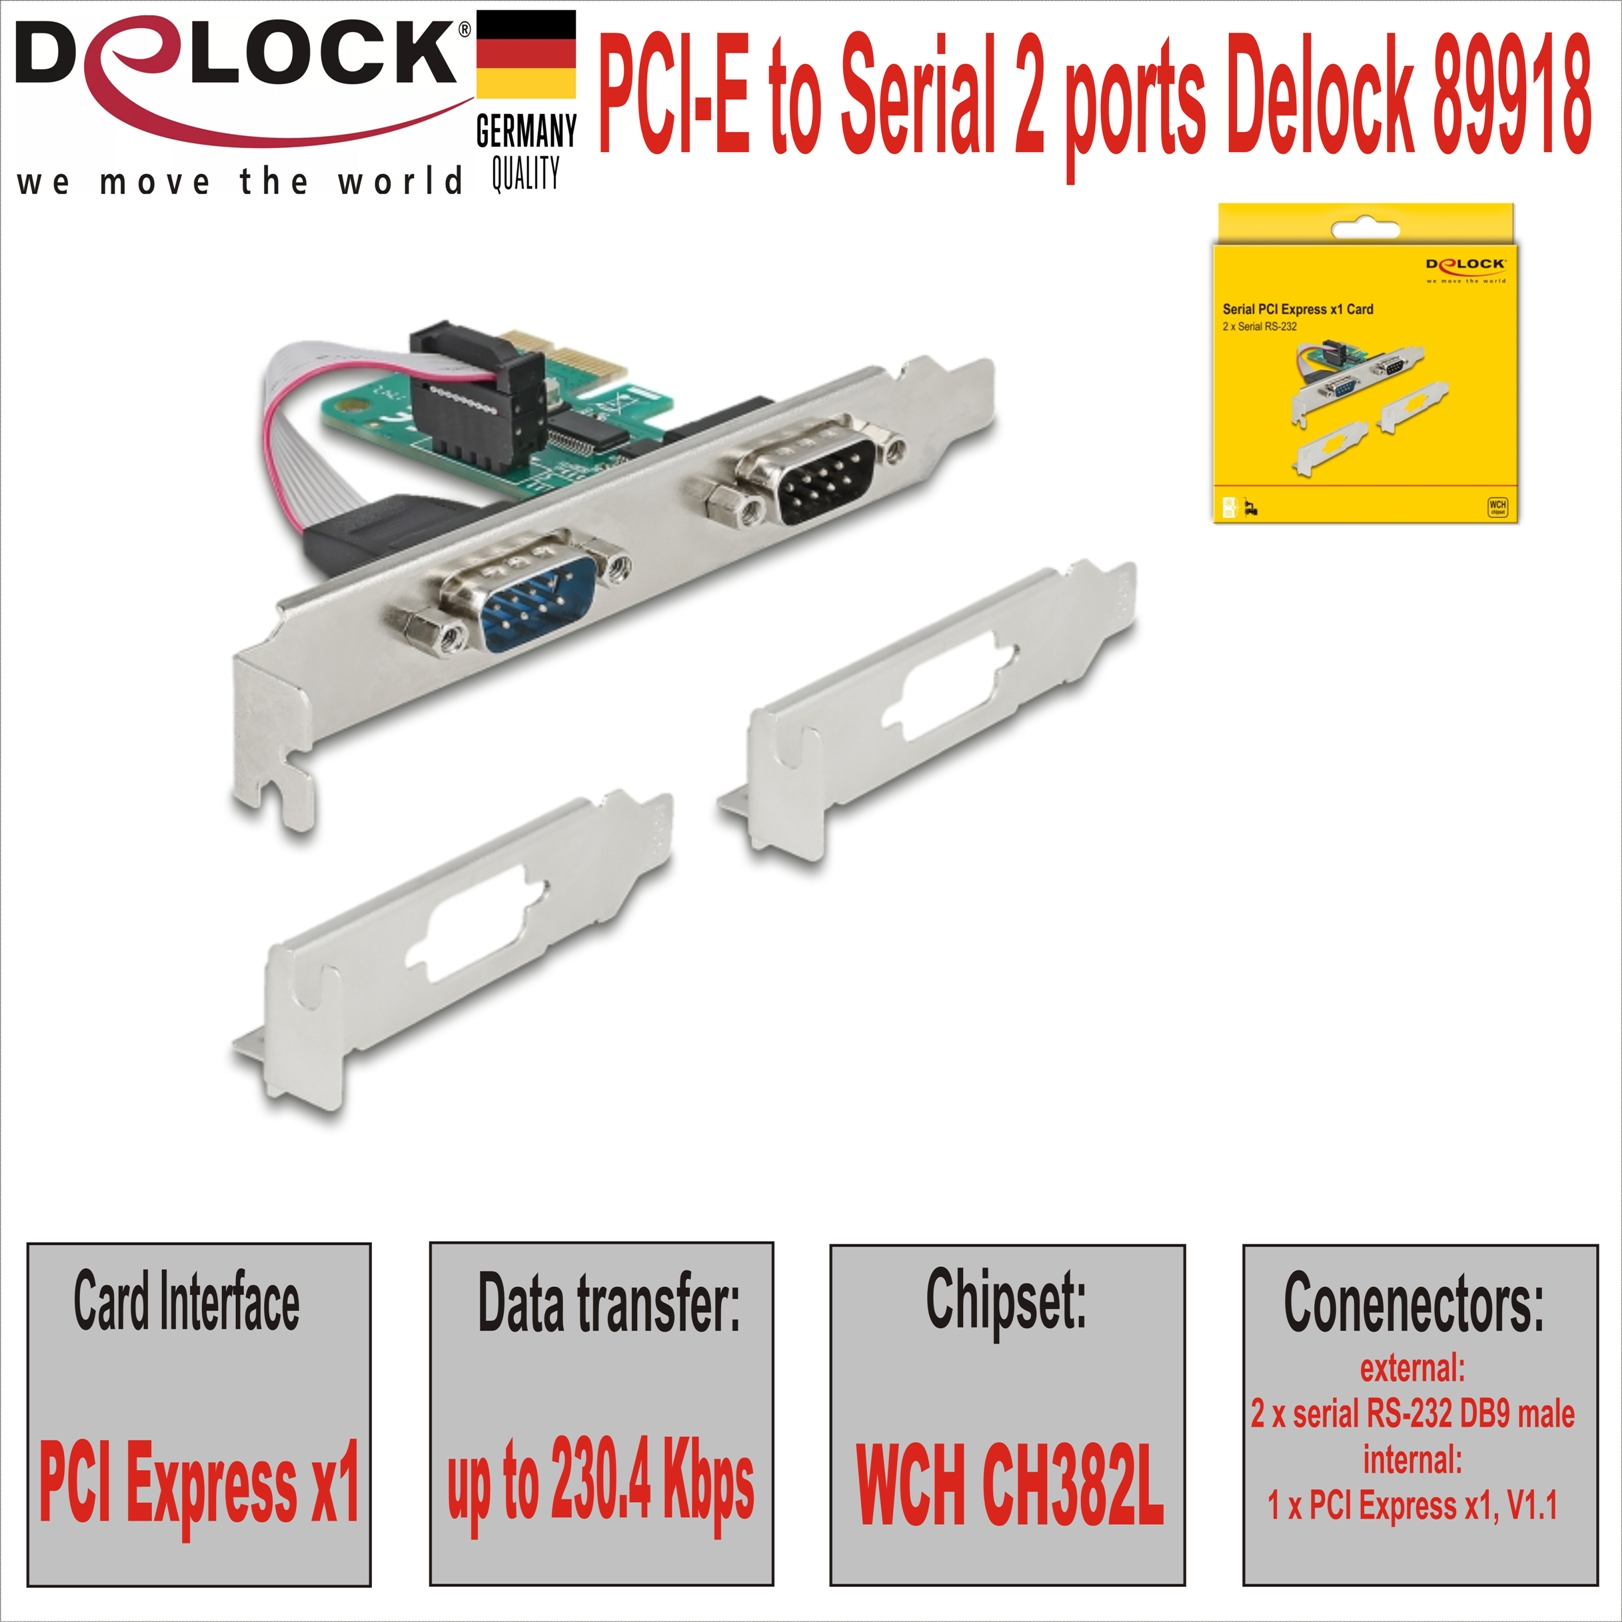 PCI-E to Serial 2 ports Delock 89918